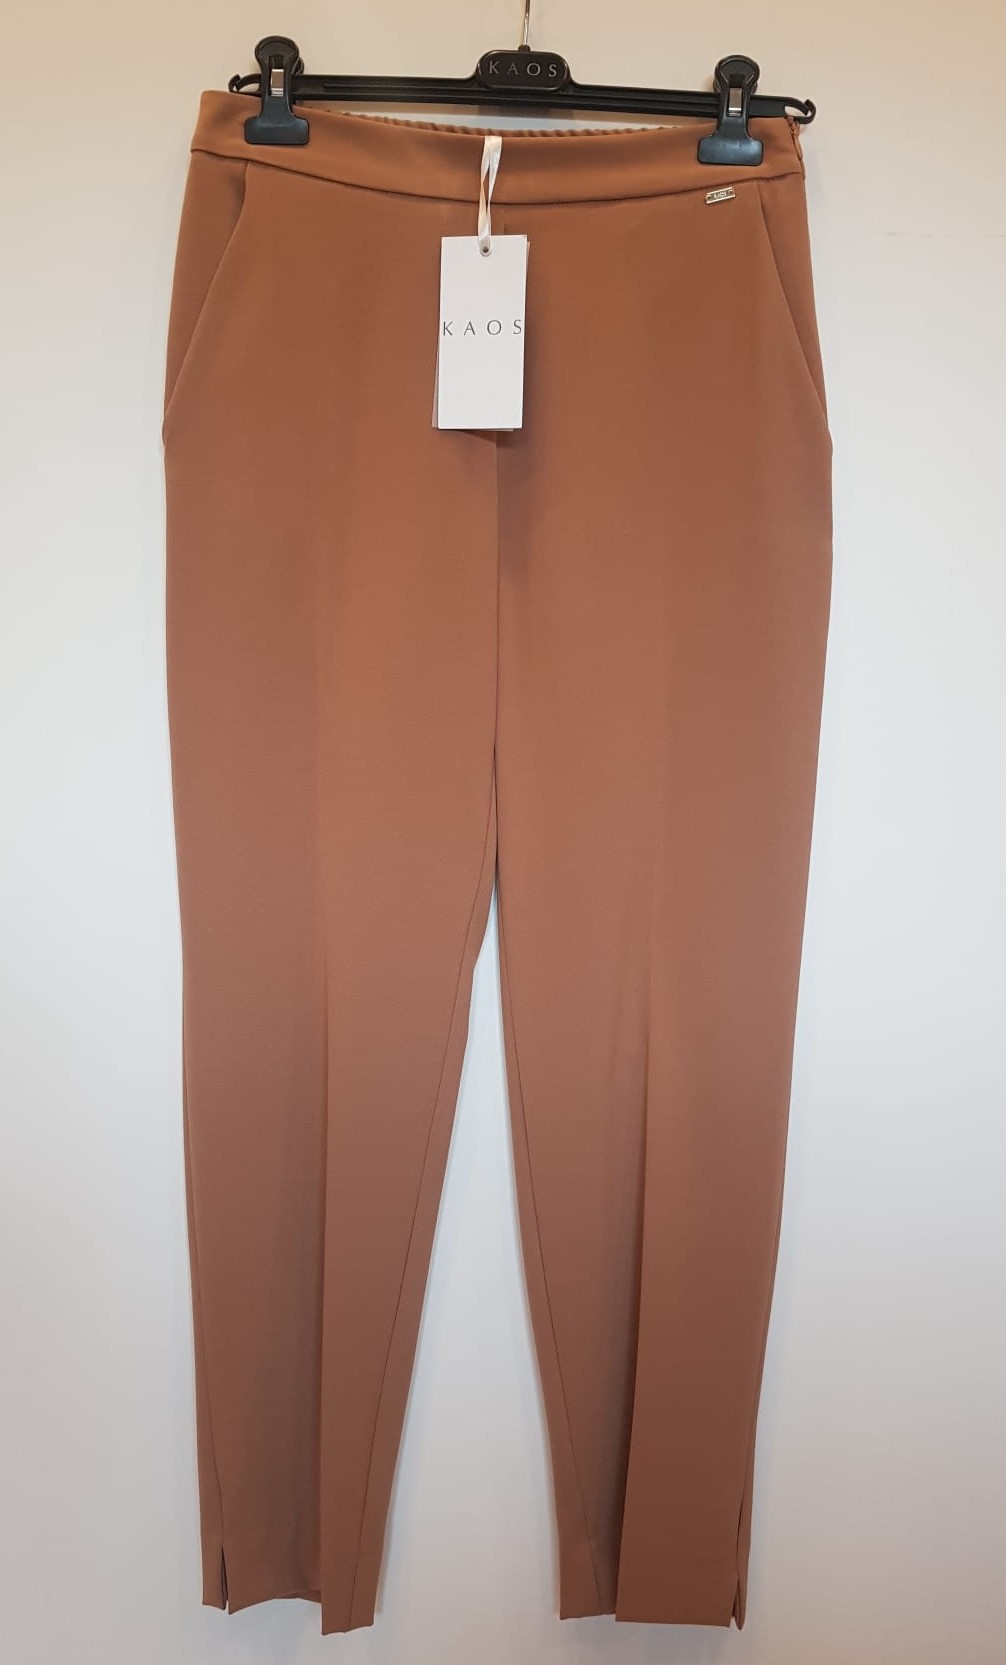 Pantalone Donna Kaos Collection Poliviscosa Elastica Cammello